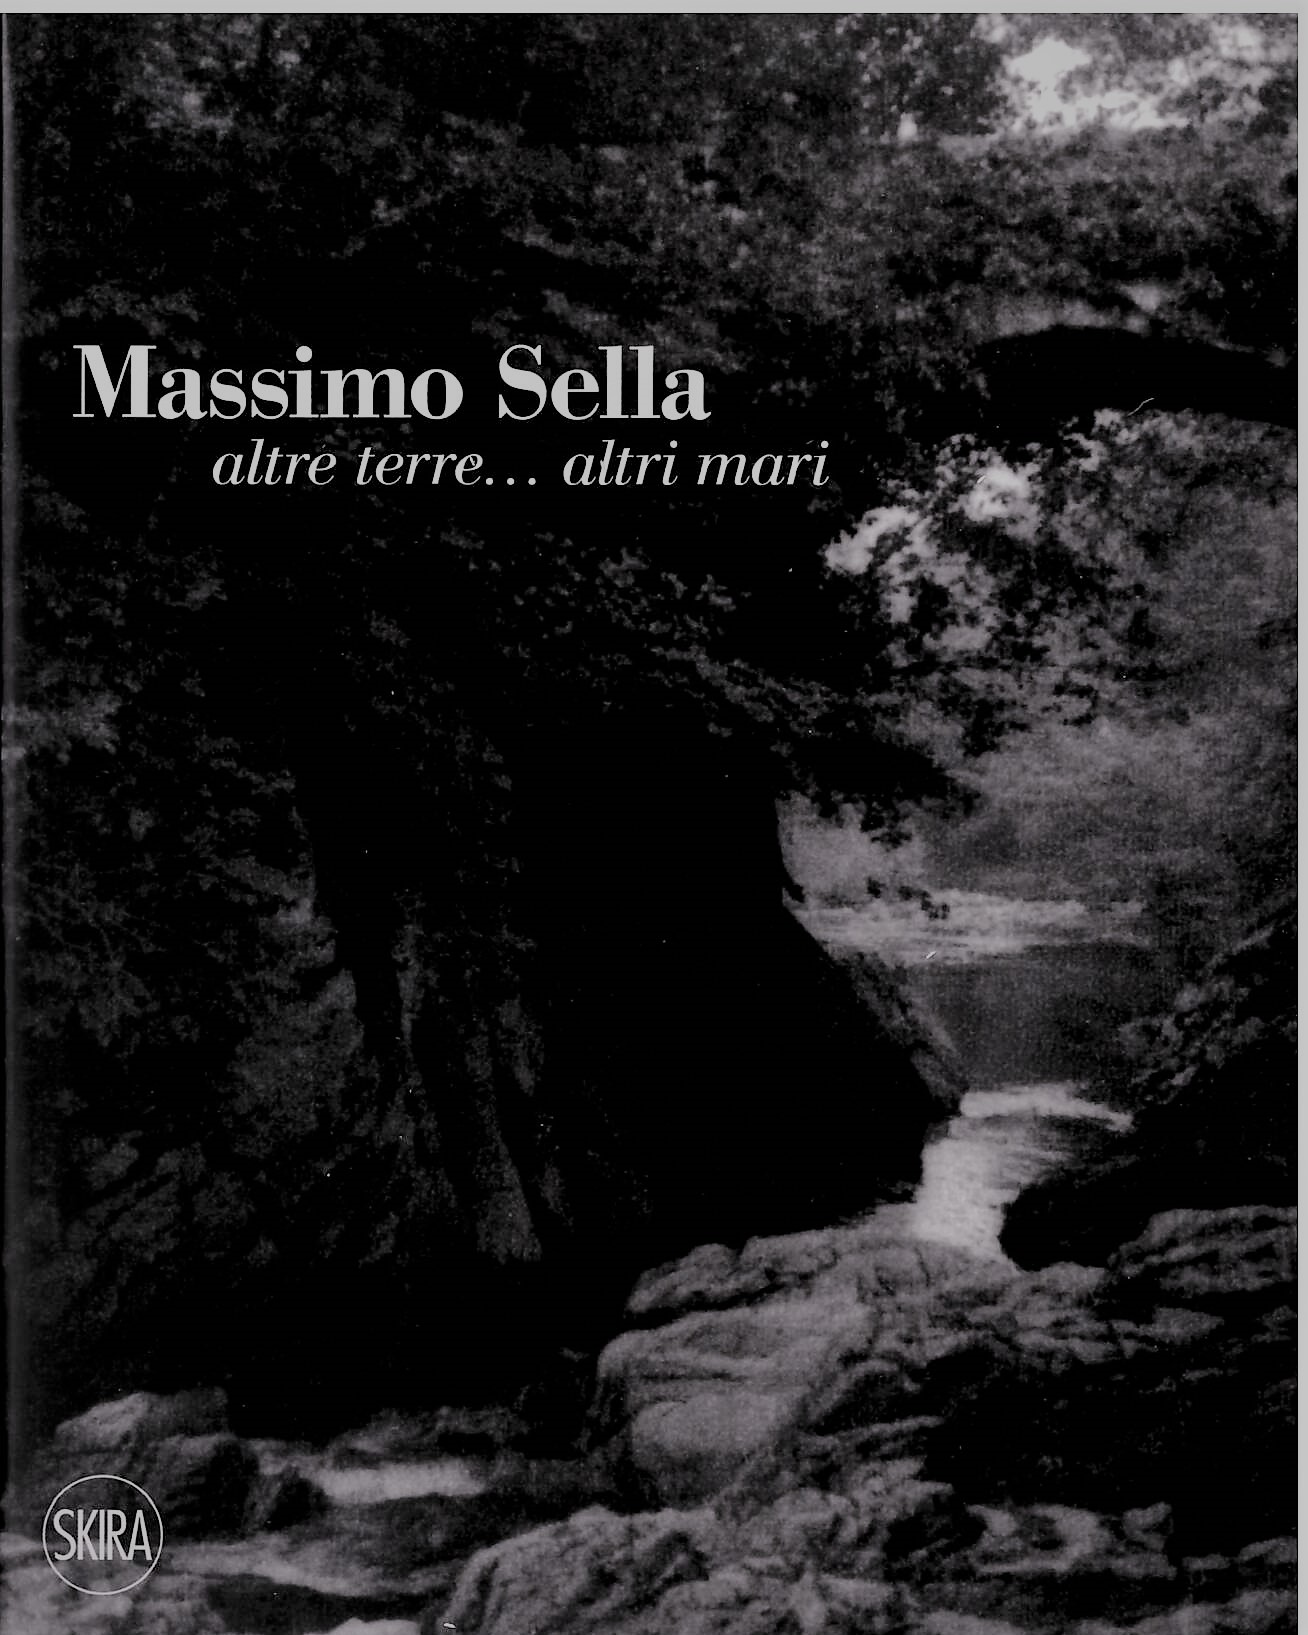 https://www.fondazionesella.org/wp-content/uploads/2022/04/Massimo-Sella-altre-terre-altri-mari.jpg